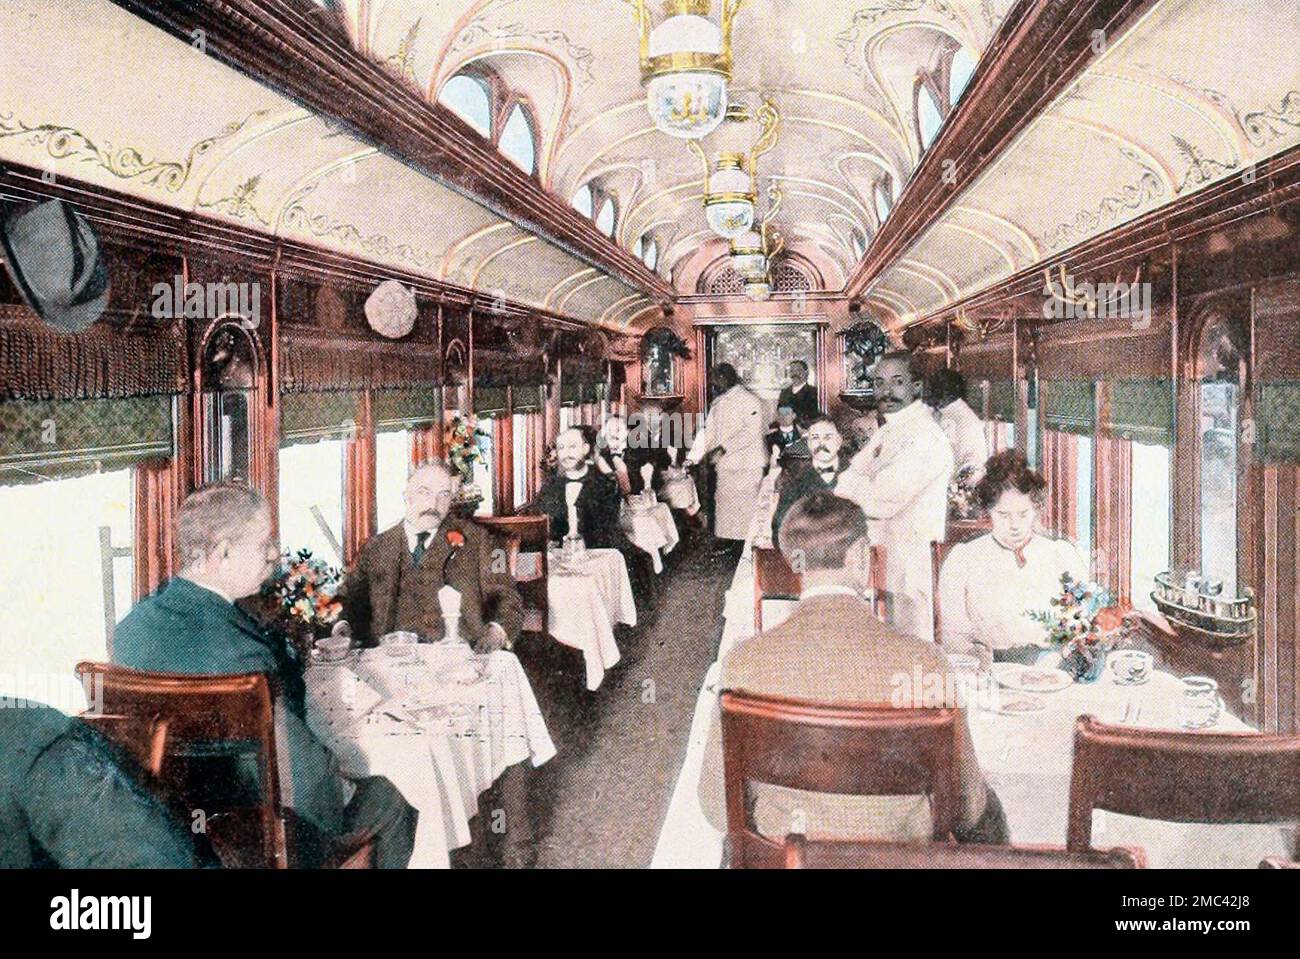 Voiture à manger intérieure sur le chemin de fer Union Pacific, vers 1900 Banque D'Images